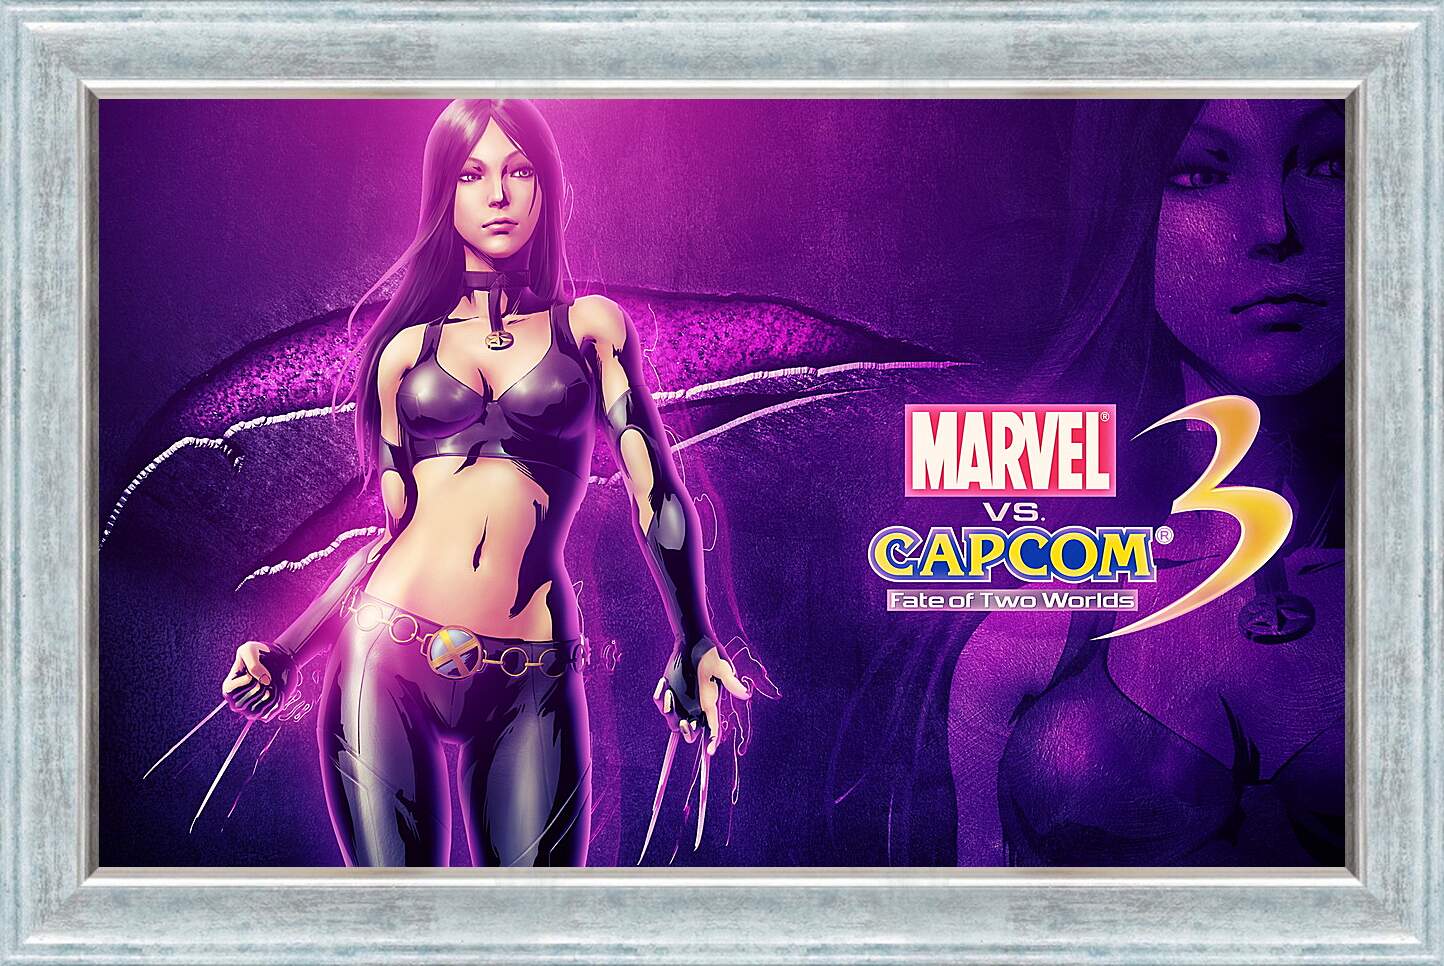 Картина в раме - Marvel Vs. Capcom 3: Fate Of Two Worlds
